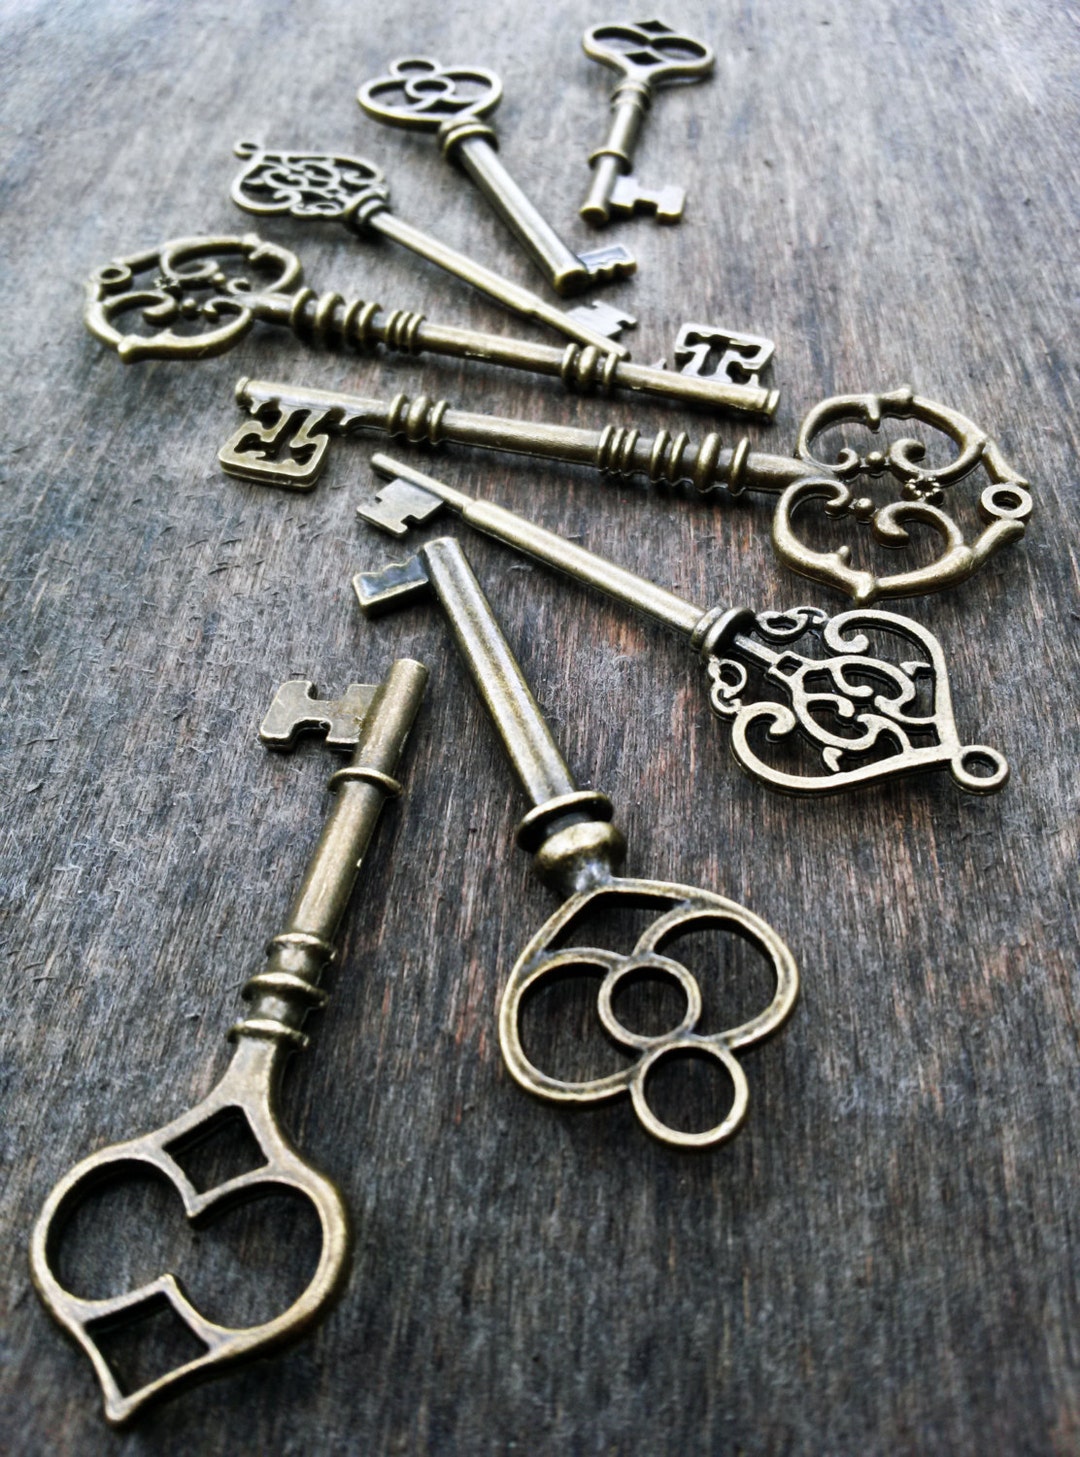 Vintage keys: 1/8 lb crafting and assemblage mix – shopjunket